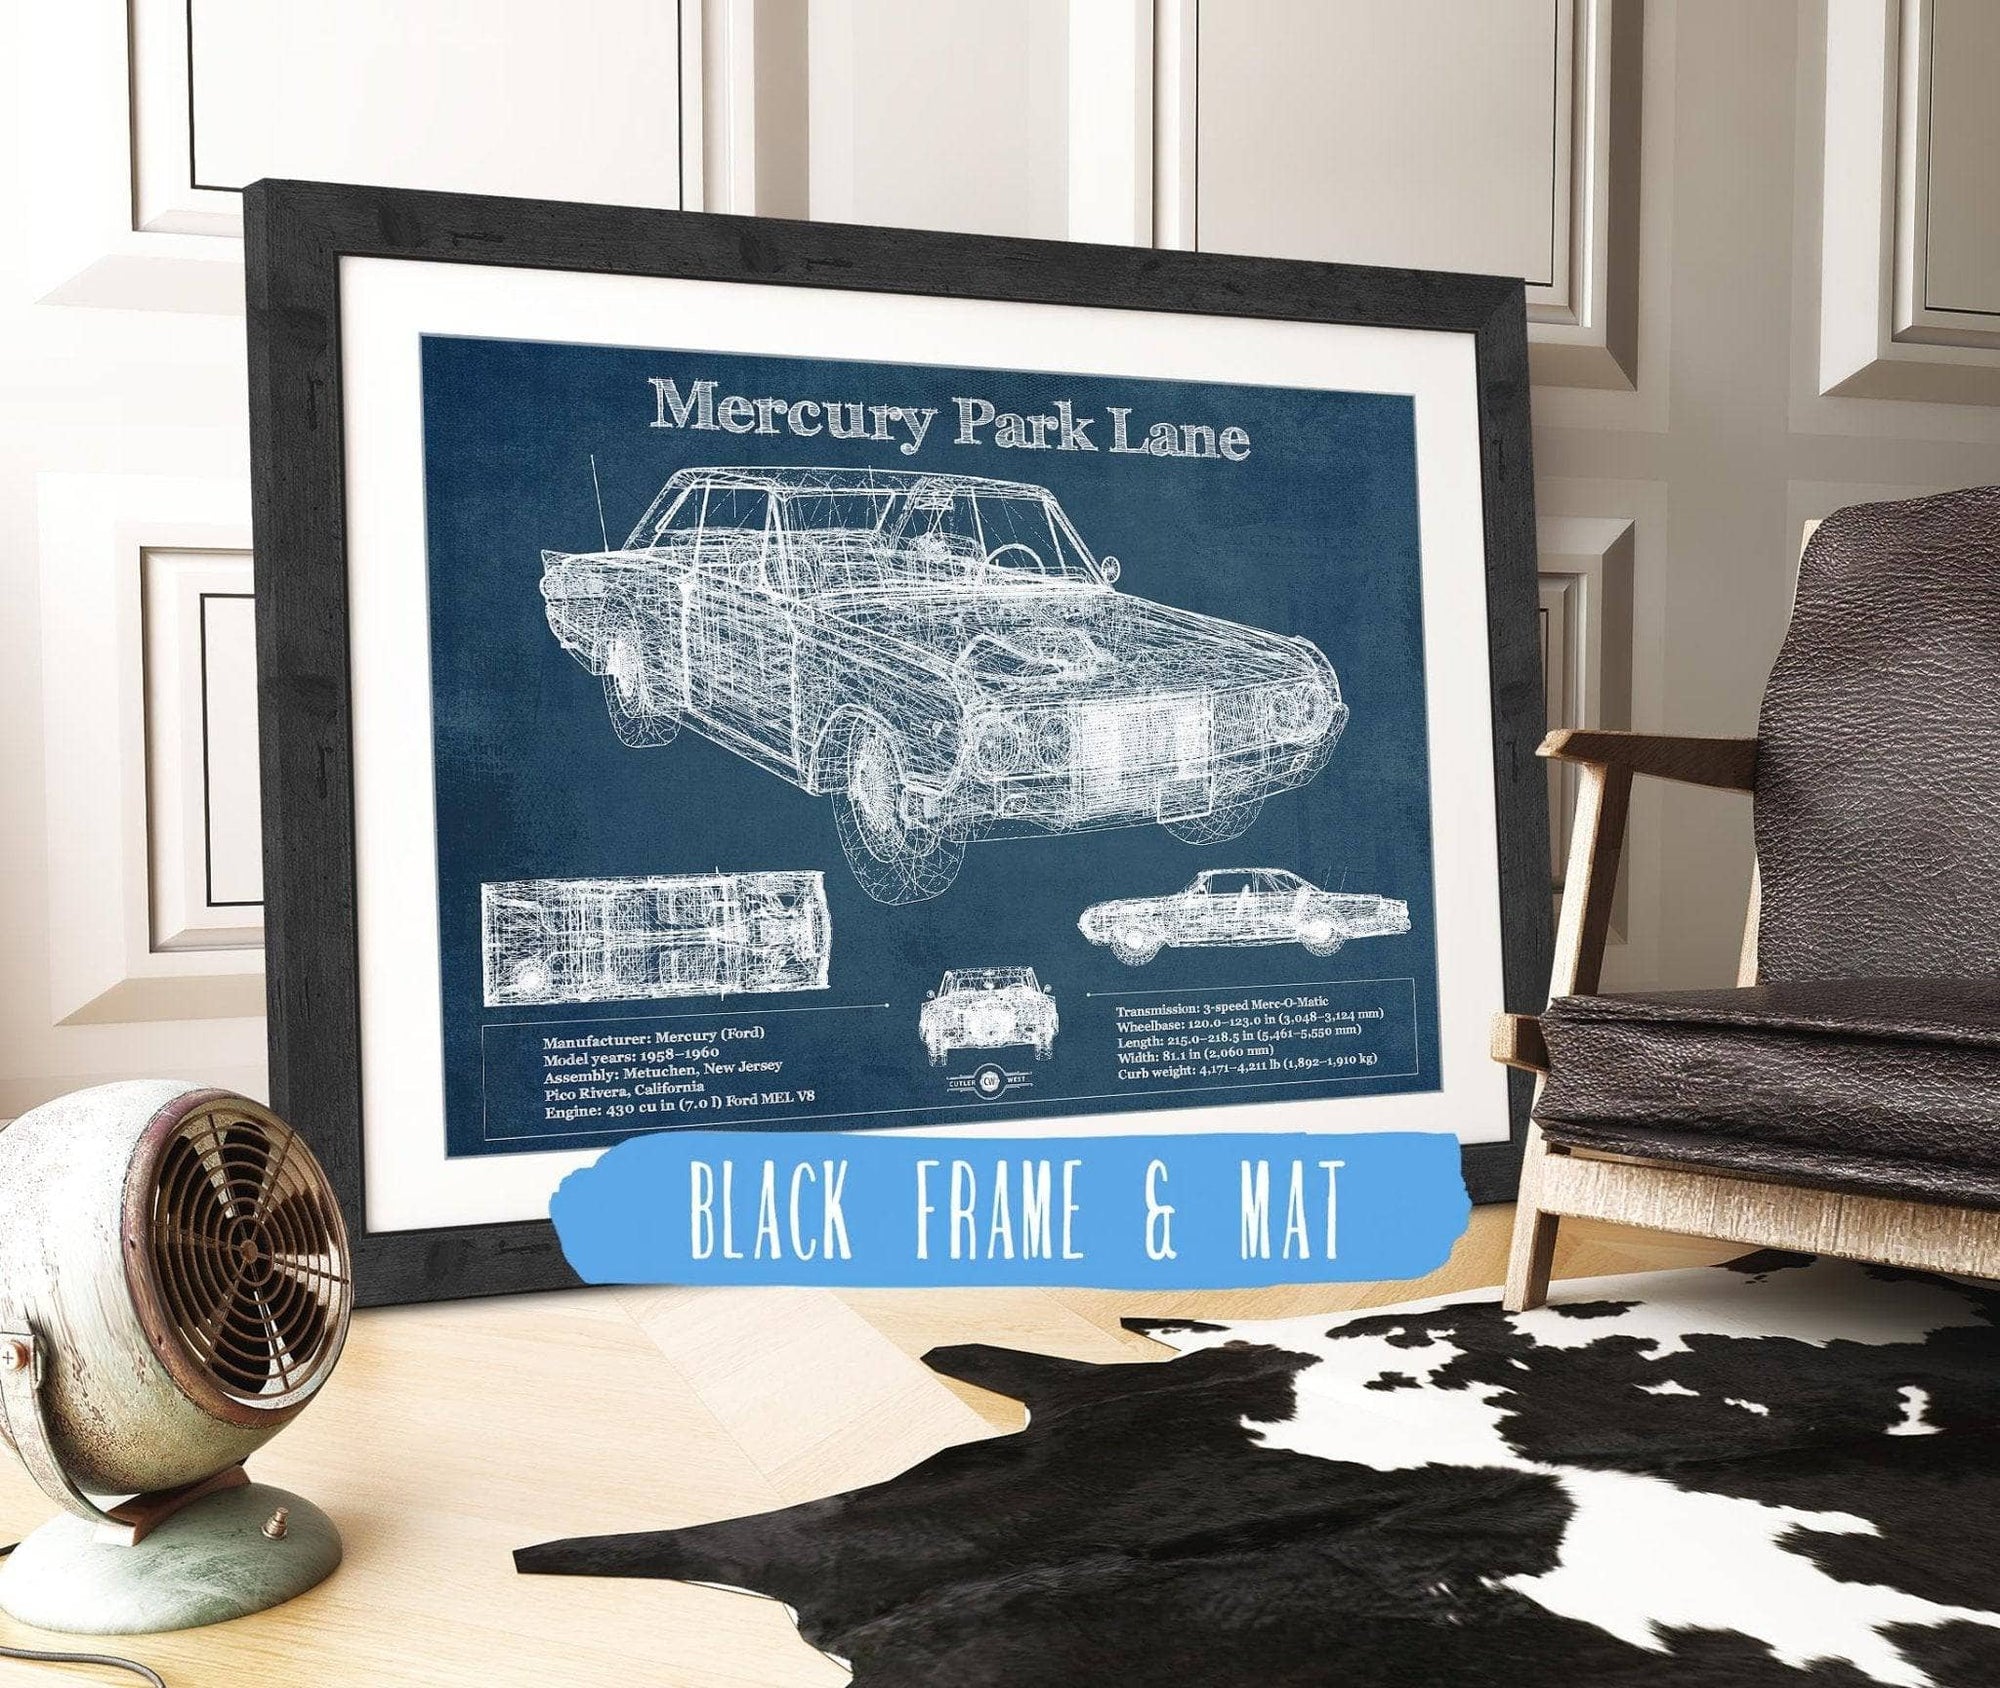 Cutler West Vehicle Collection Mercury Park Lane Blueprint Vintage Auto Print